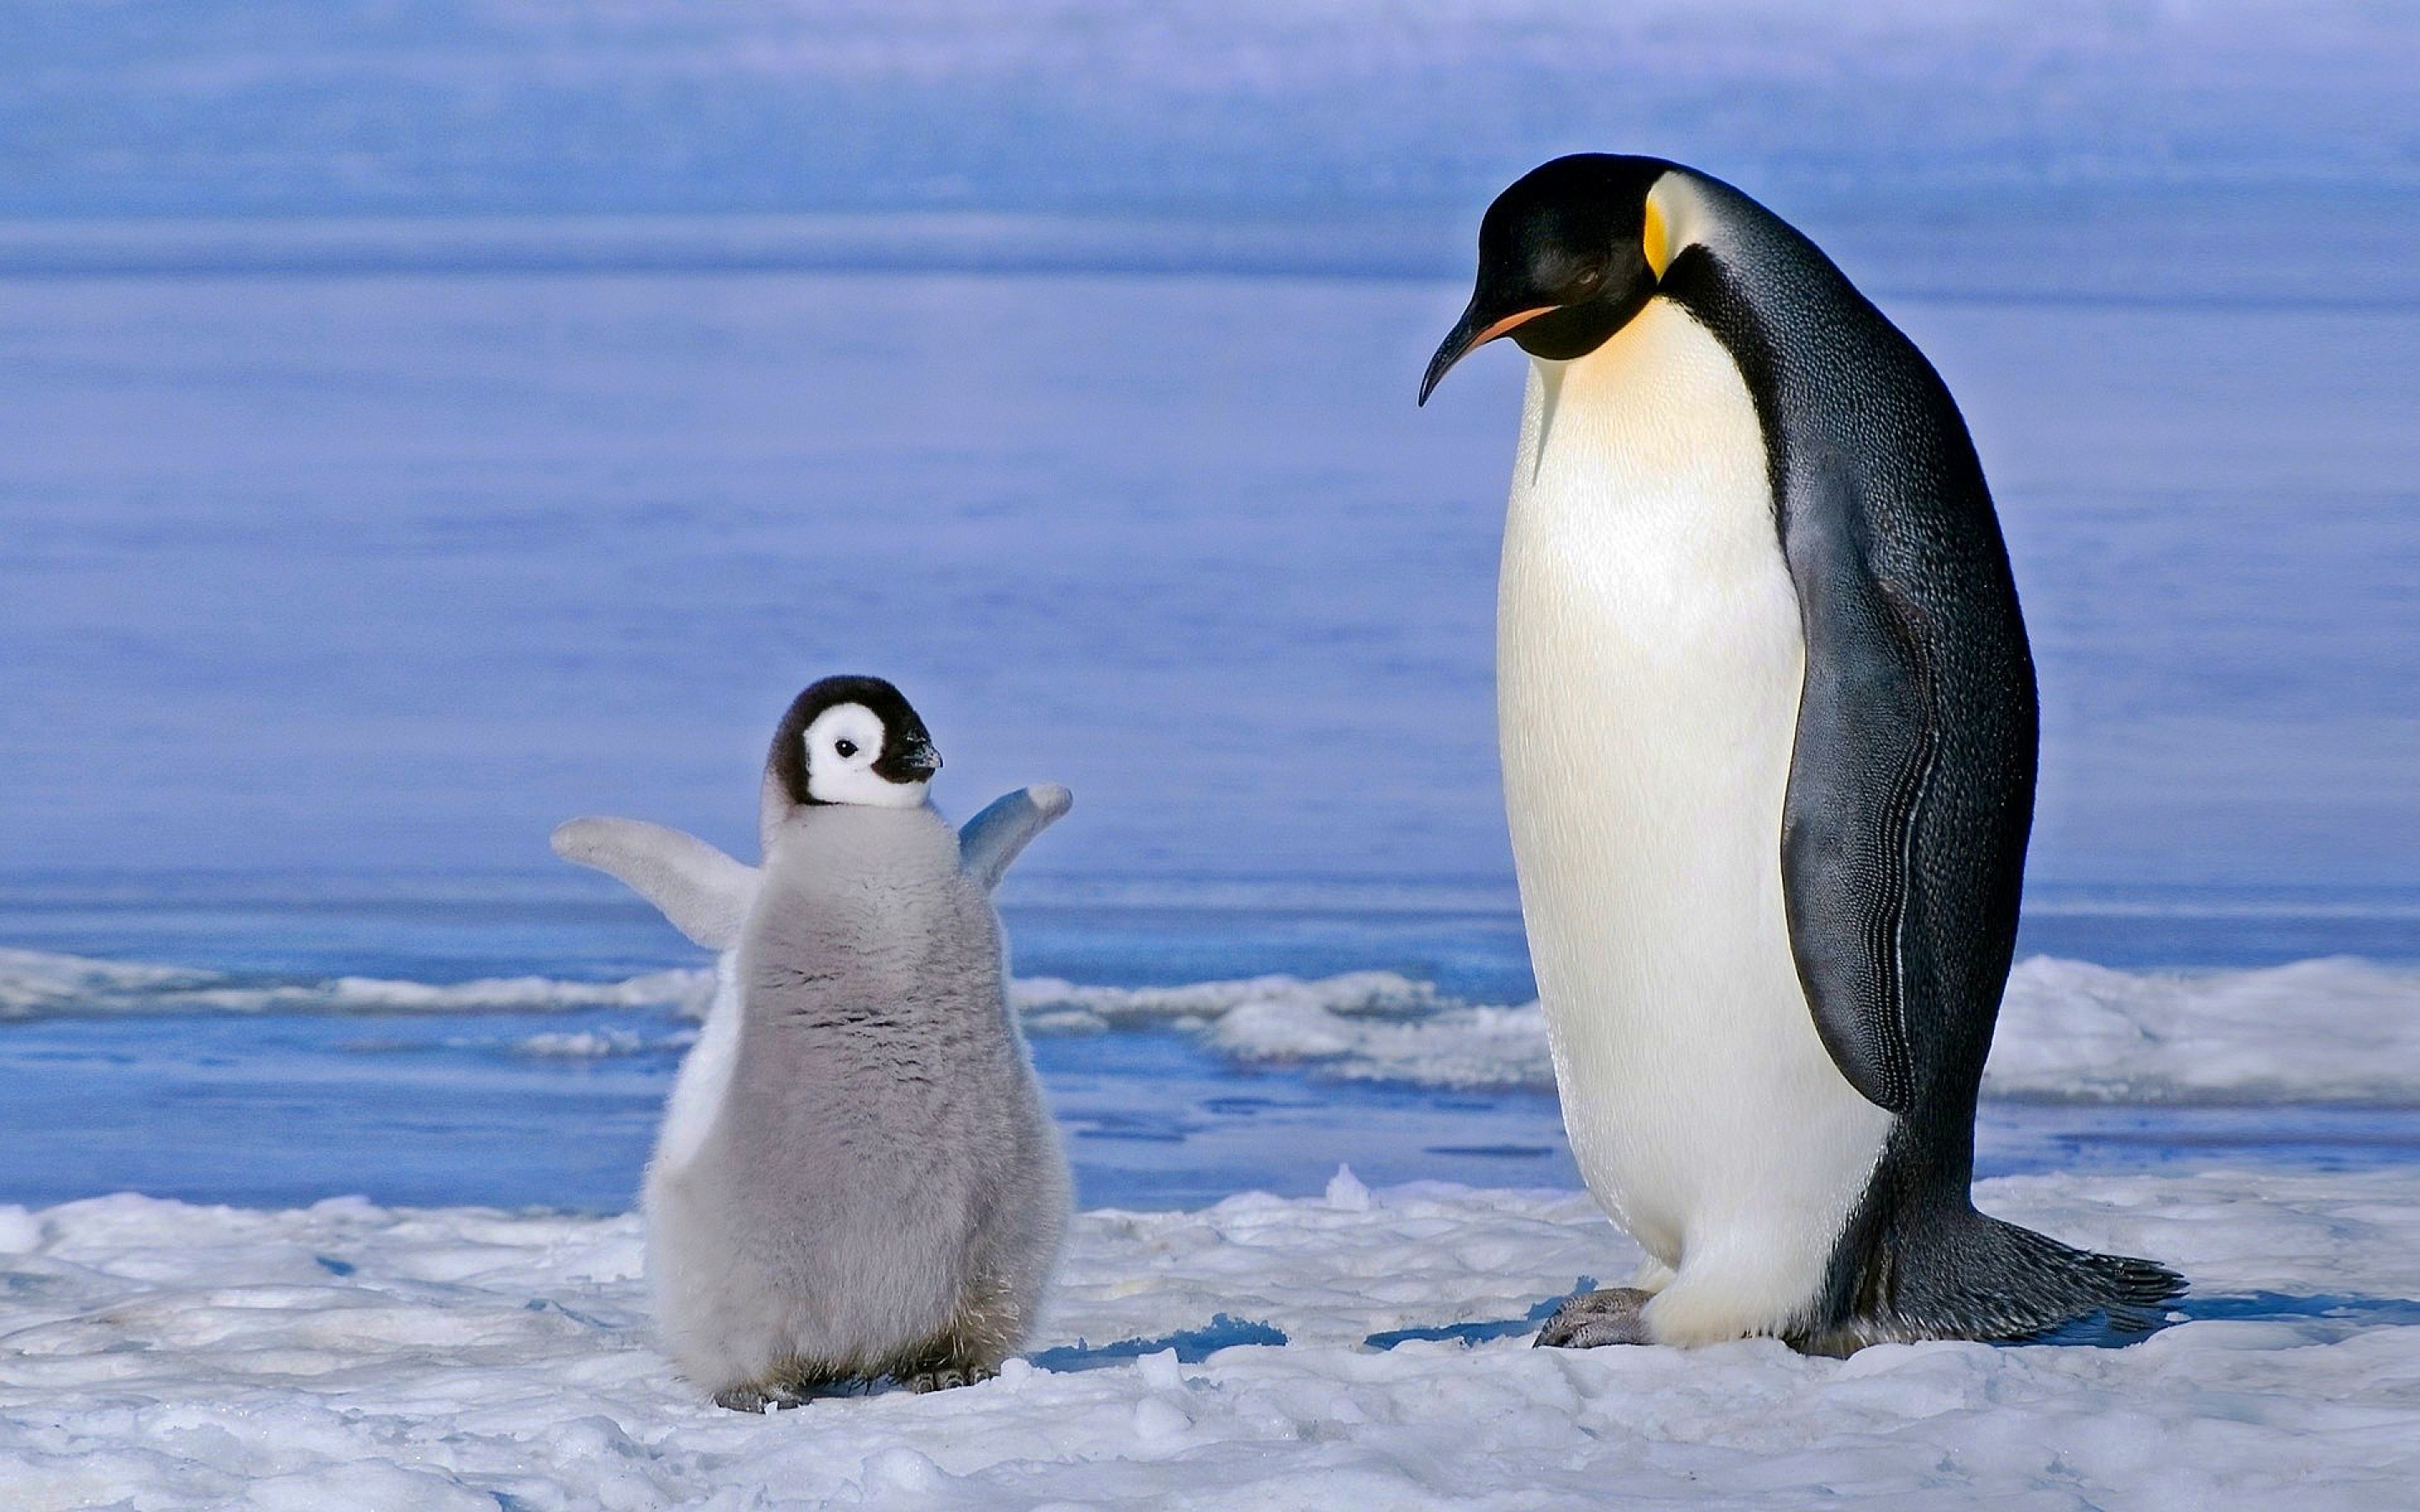 Императорский пингвин чемпион по нырянию среди пингвинов. Пингвины в Антарктиде. Императорский Пингвин в Антарктиде. Императорский Пингвин детеныш. Животные Антарктиды Императорский Пингвин.